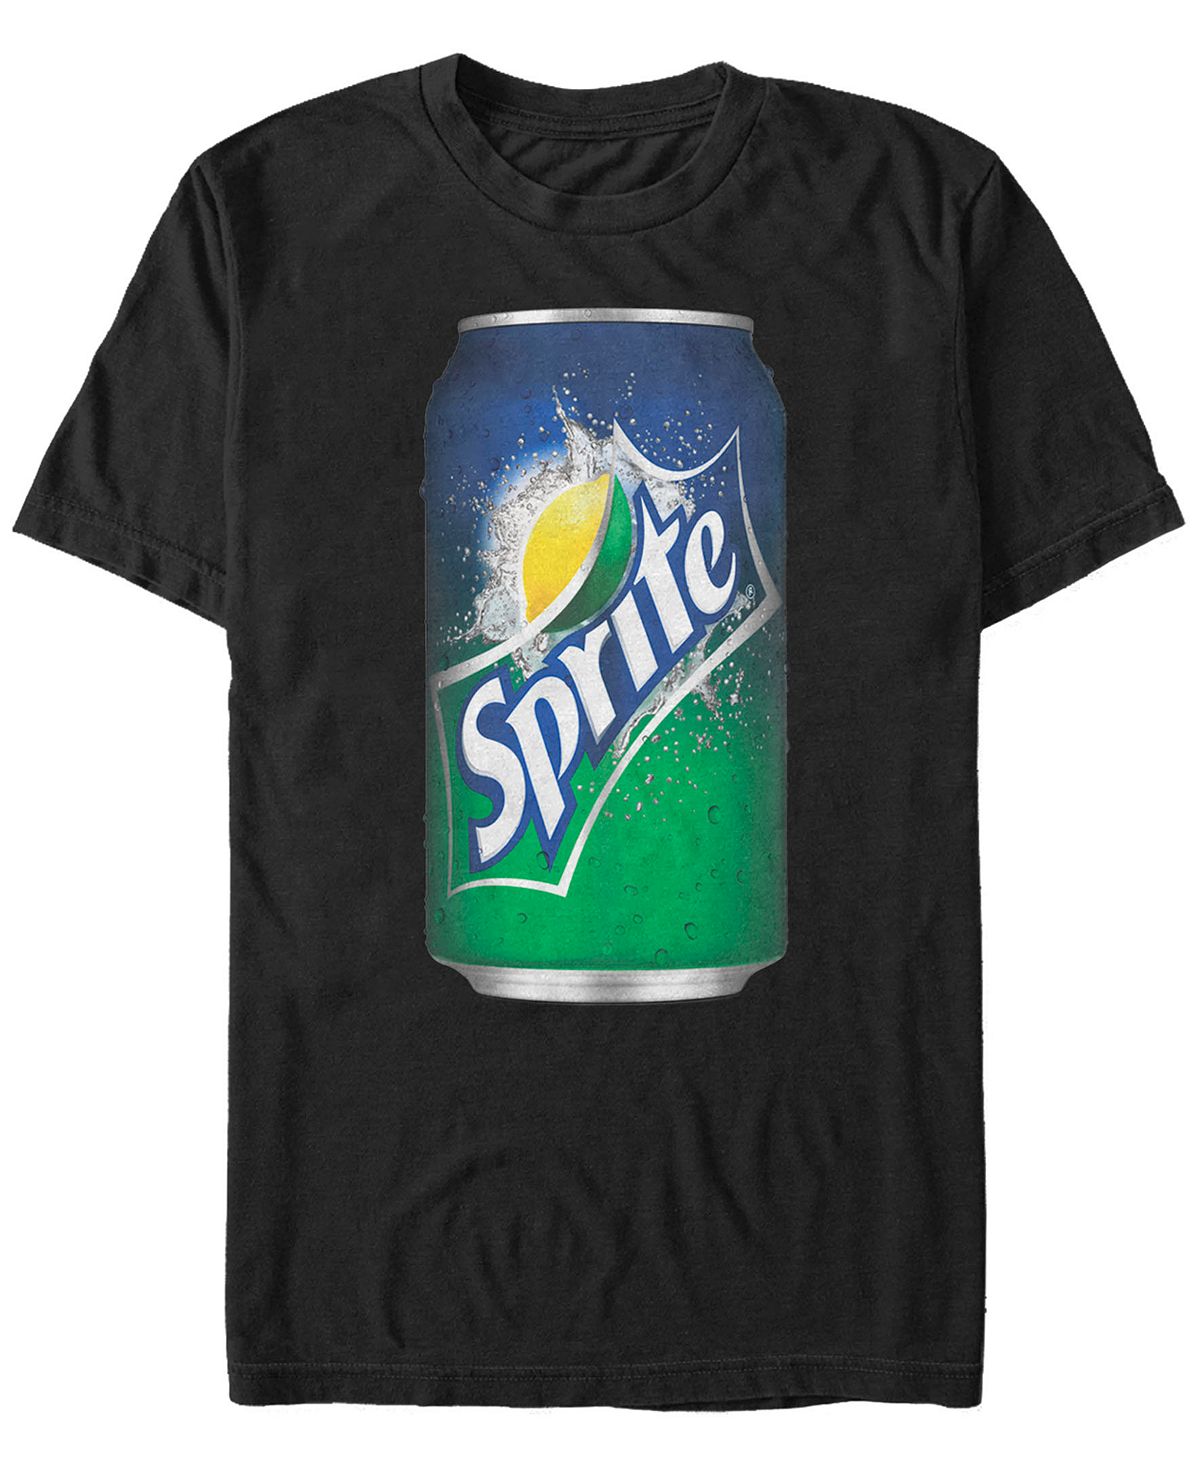 Мужская футболка с коротким рукавом giant sprite can logo Fifth Sun, черный